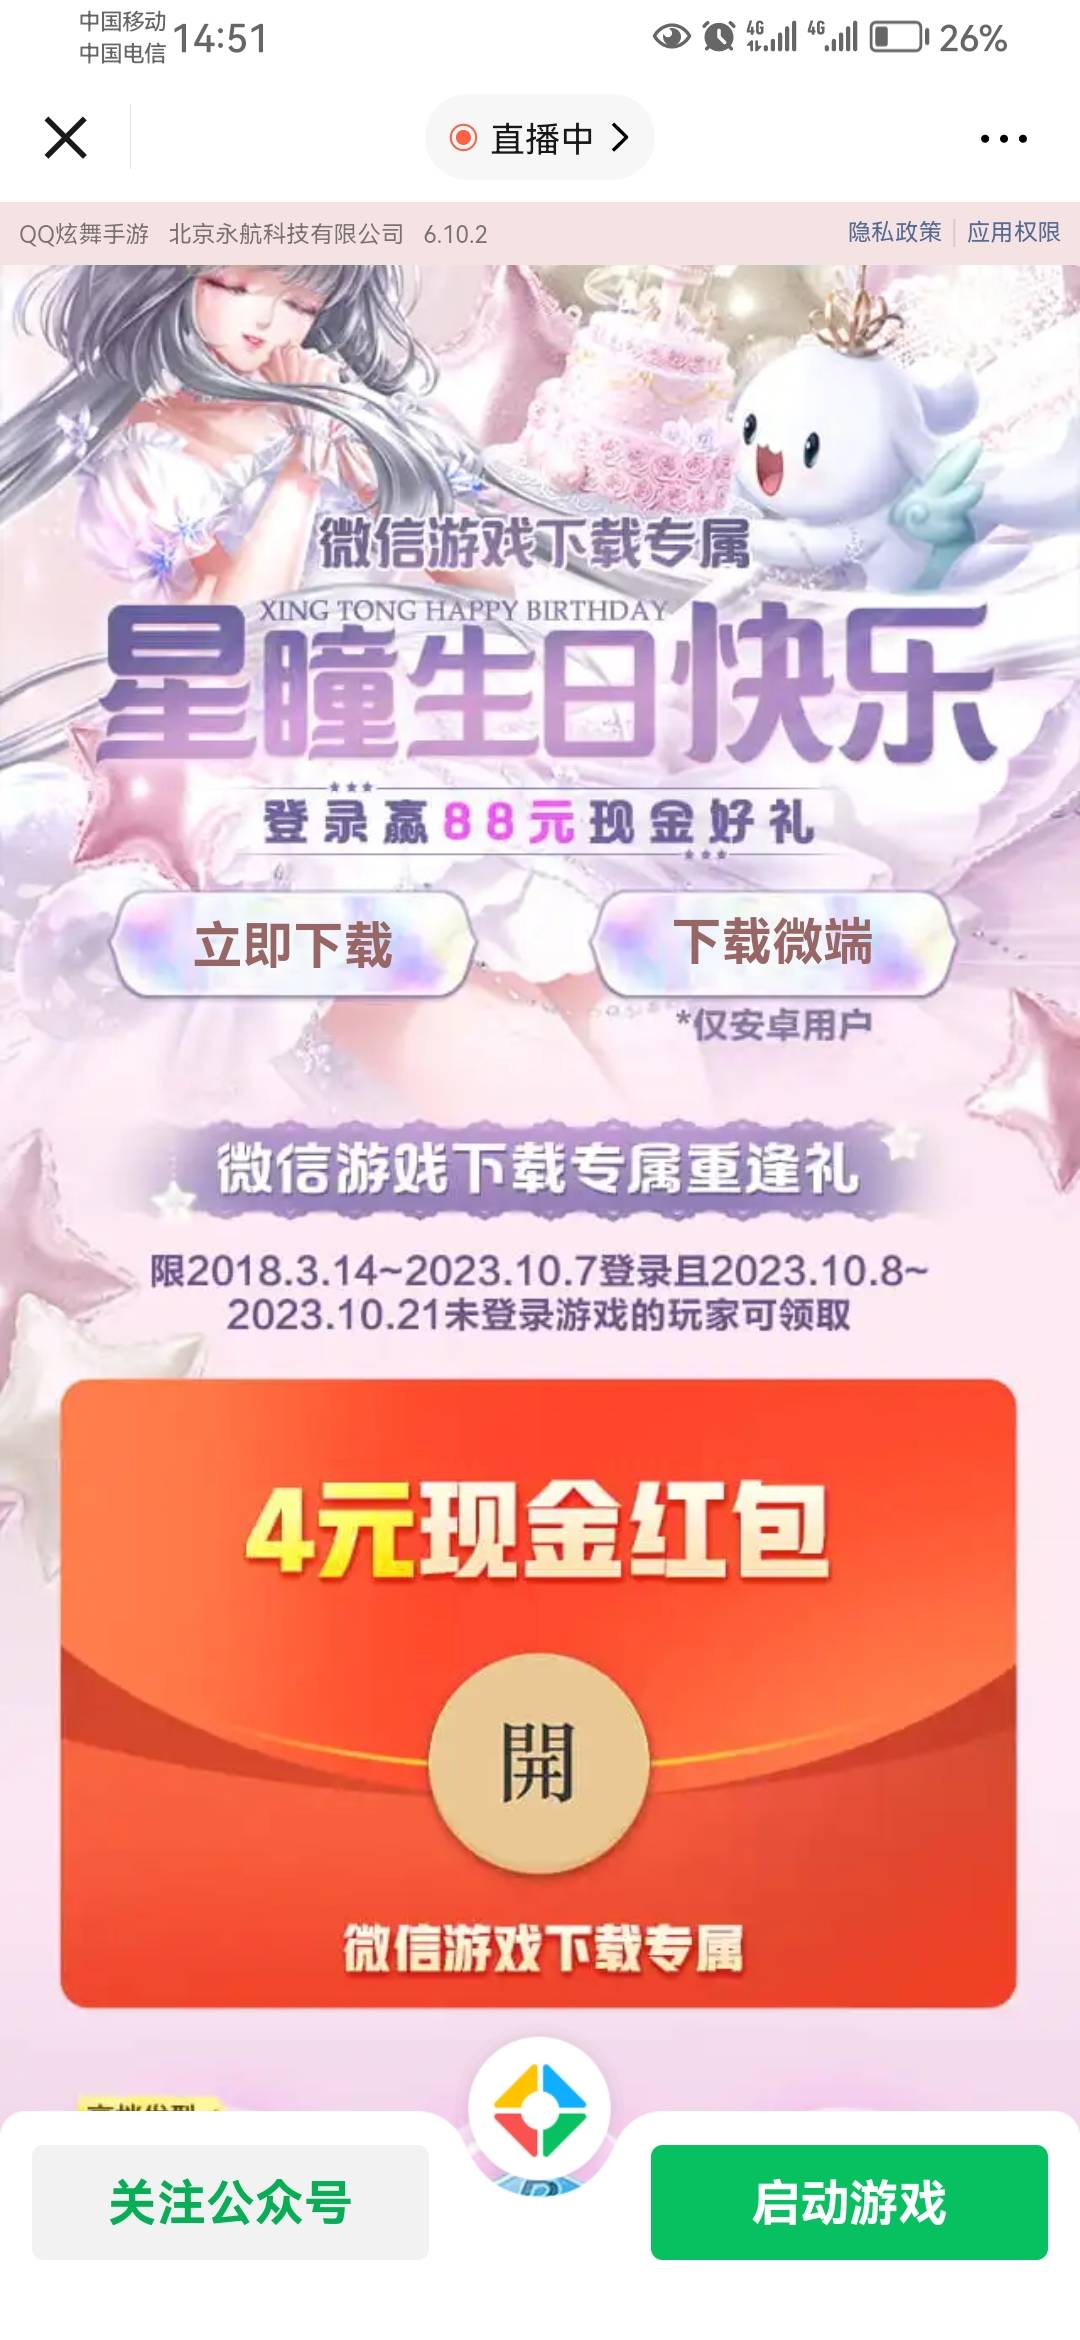 [福利在线]腾讯游戏QQ炫舞21号游戏链接，下载专属重逢礼